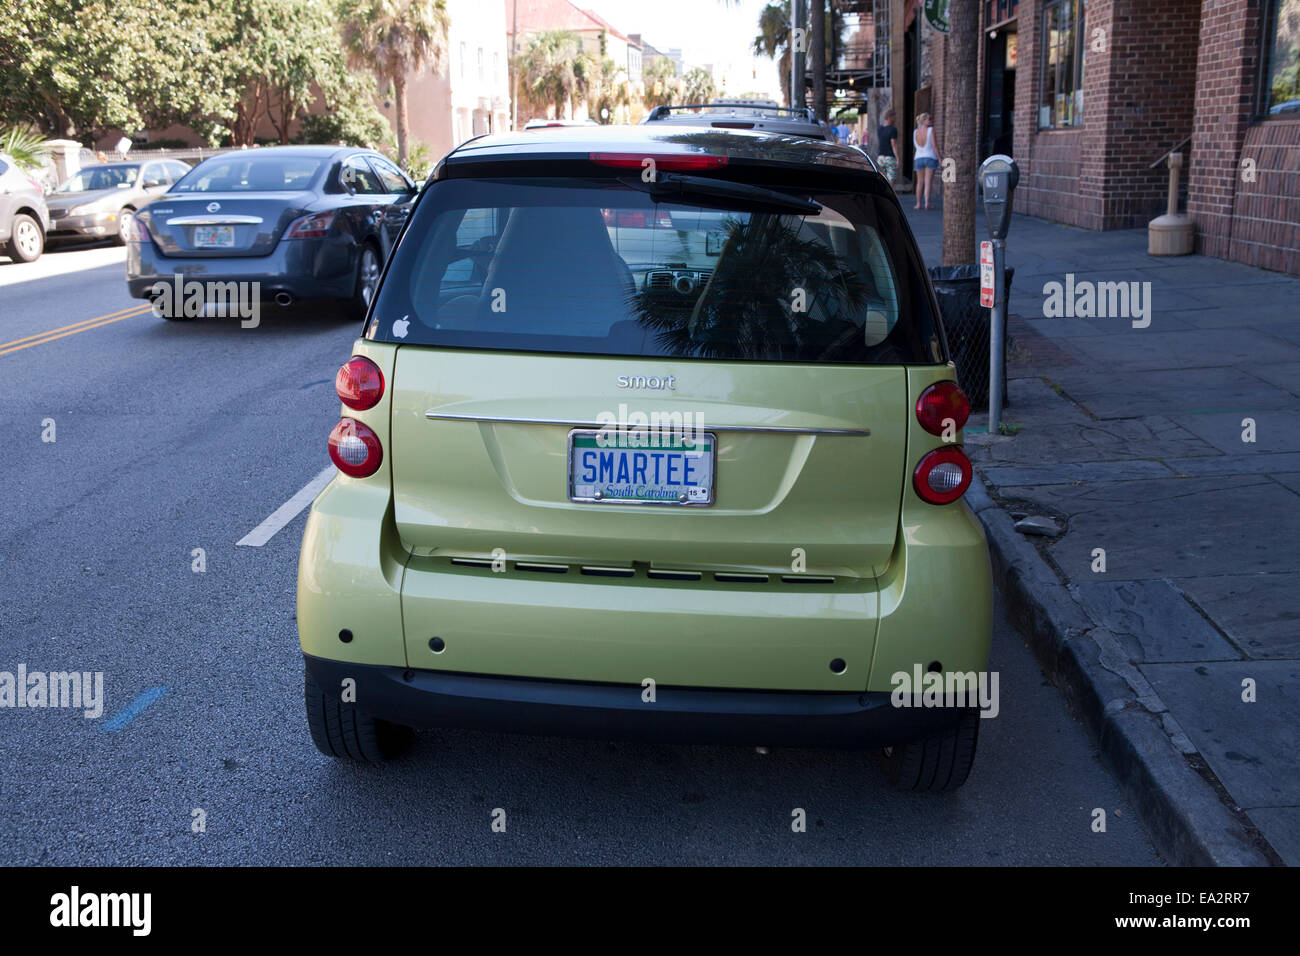 Green smart auto parcheggiate in strada con una targa che recita "martee'. Foto Stock